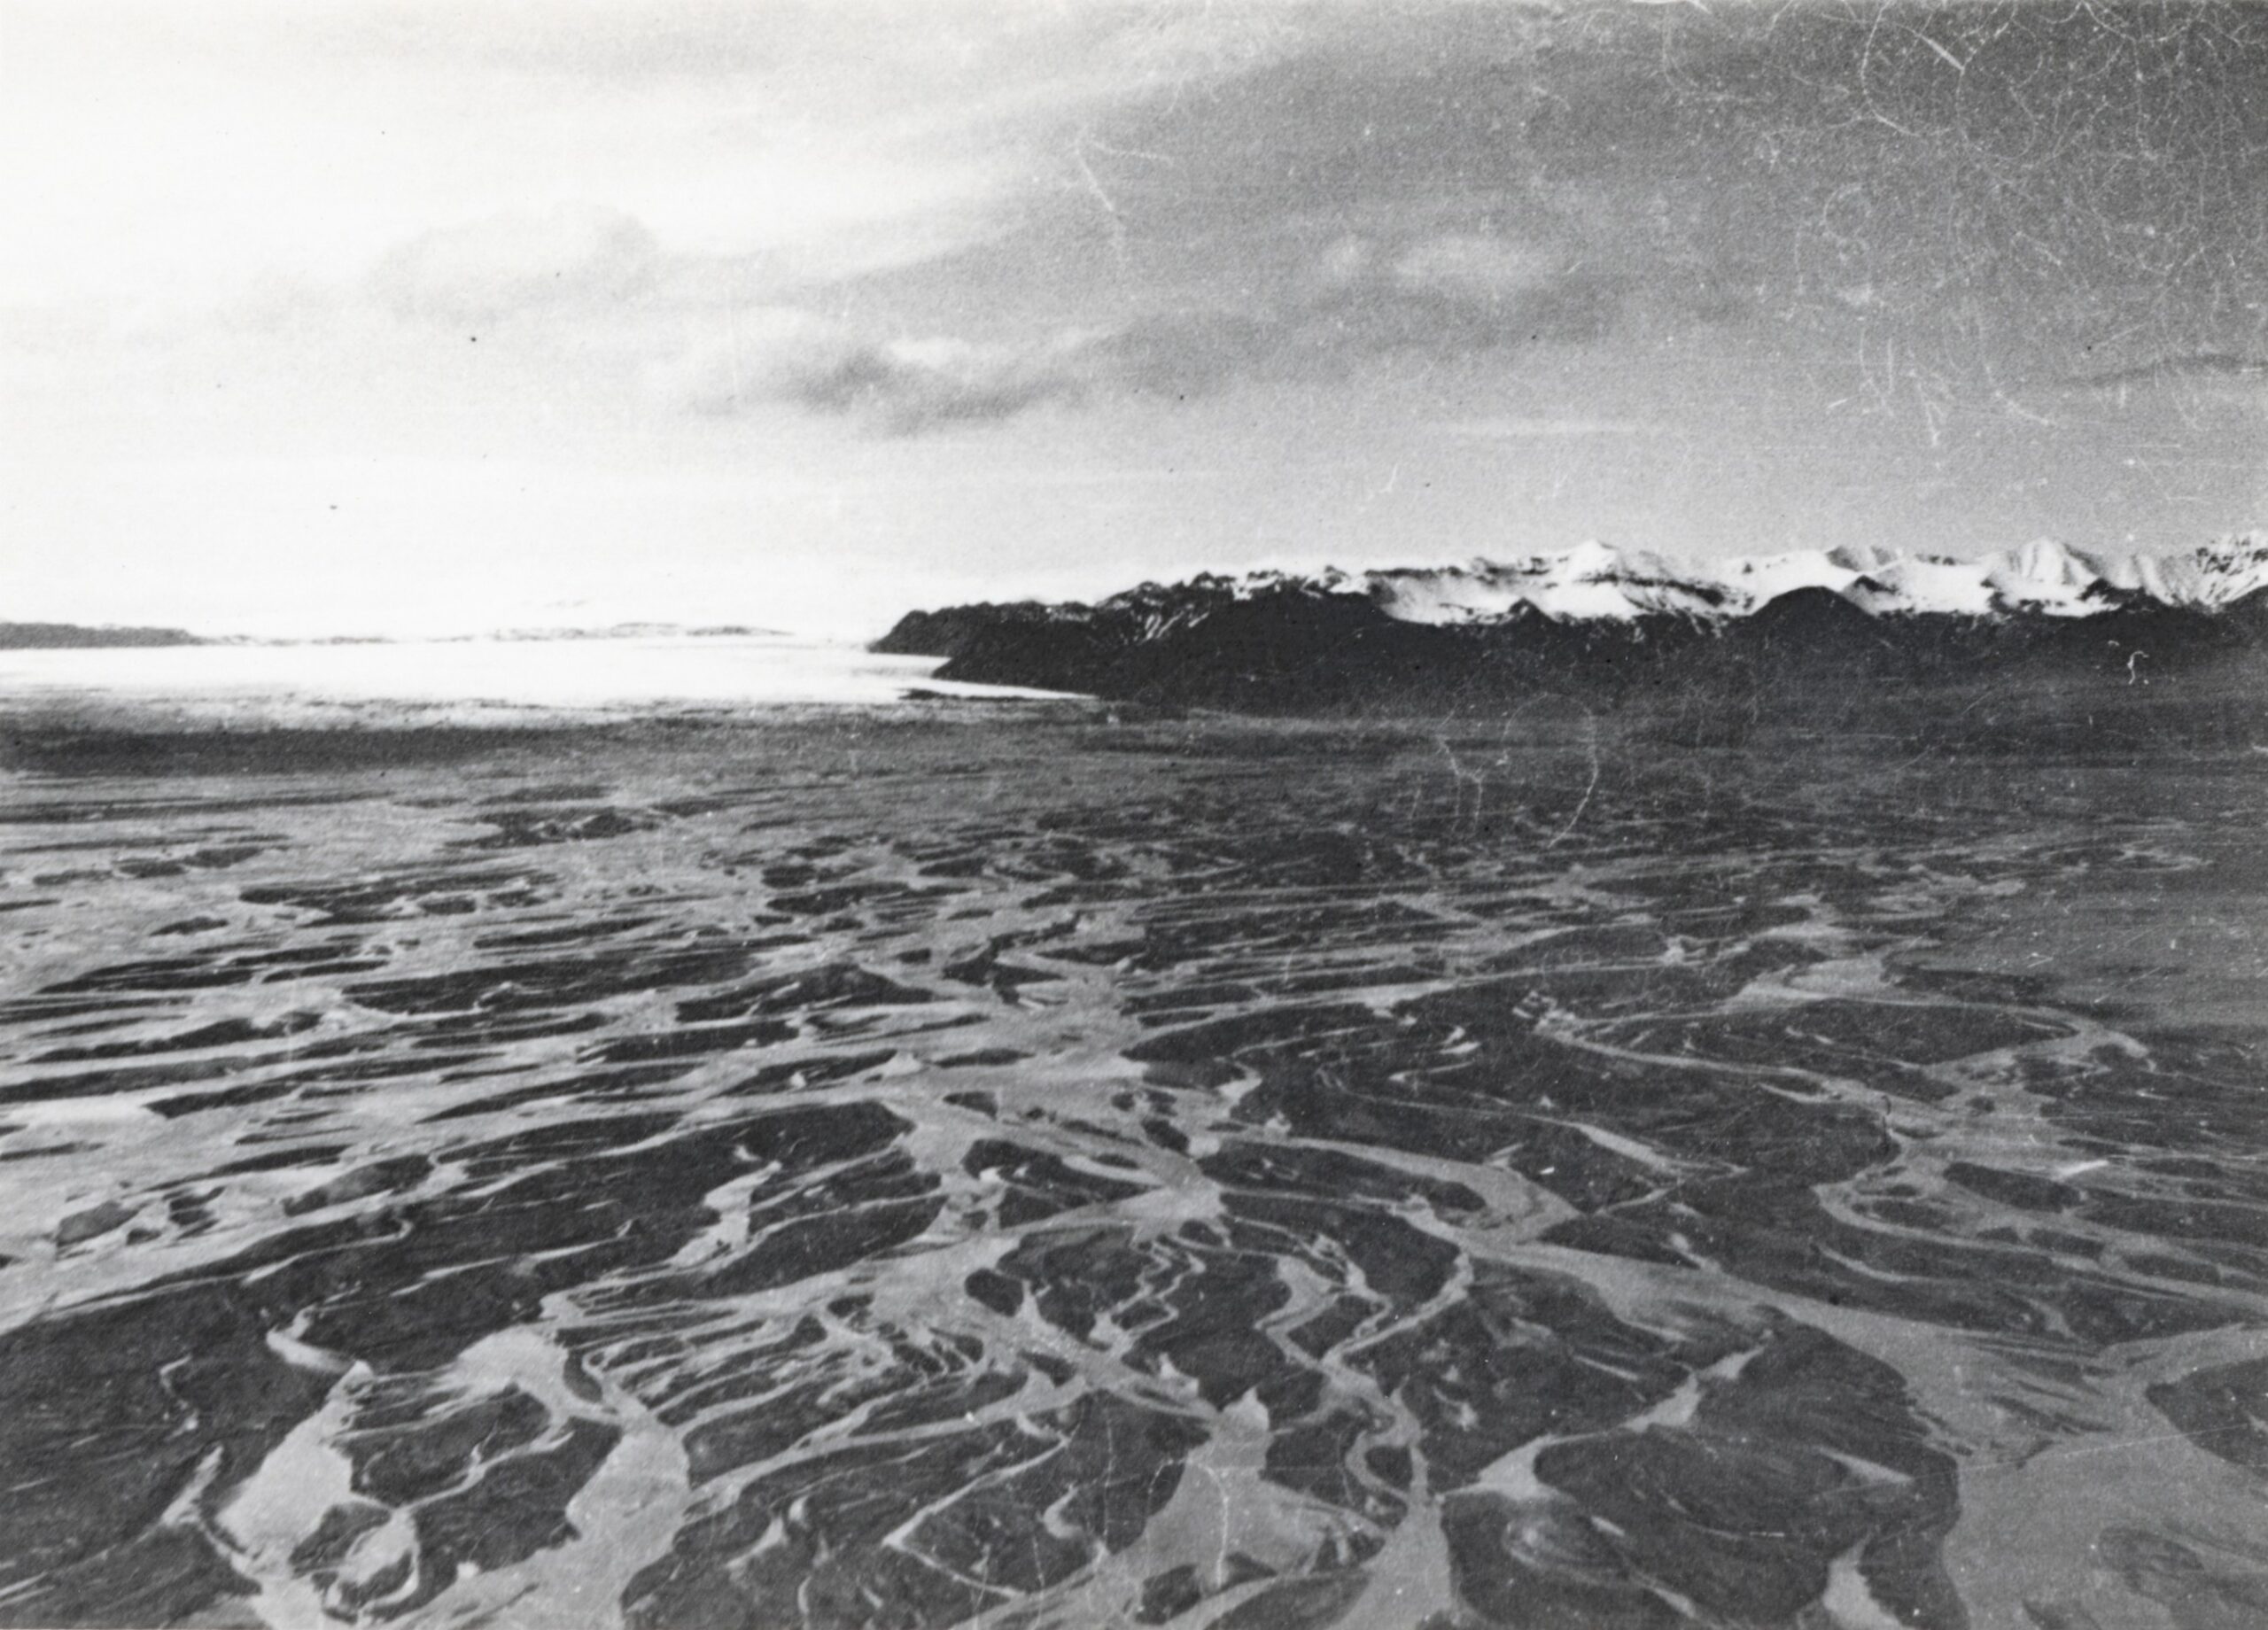 Skeiðarárhlaup in 1938. Bron: Sigurdur Thorarinsson, Jöklarannsóknafélag Íslands.